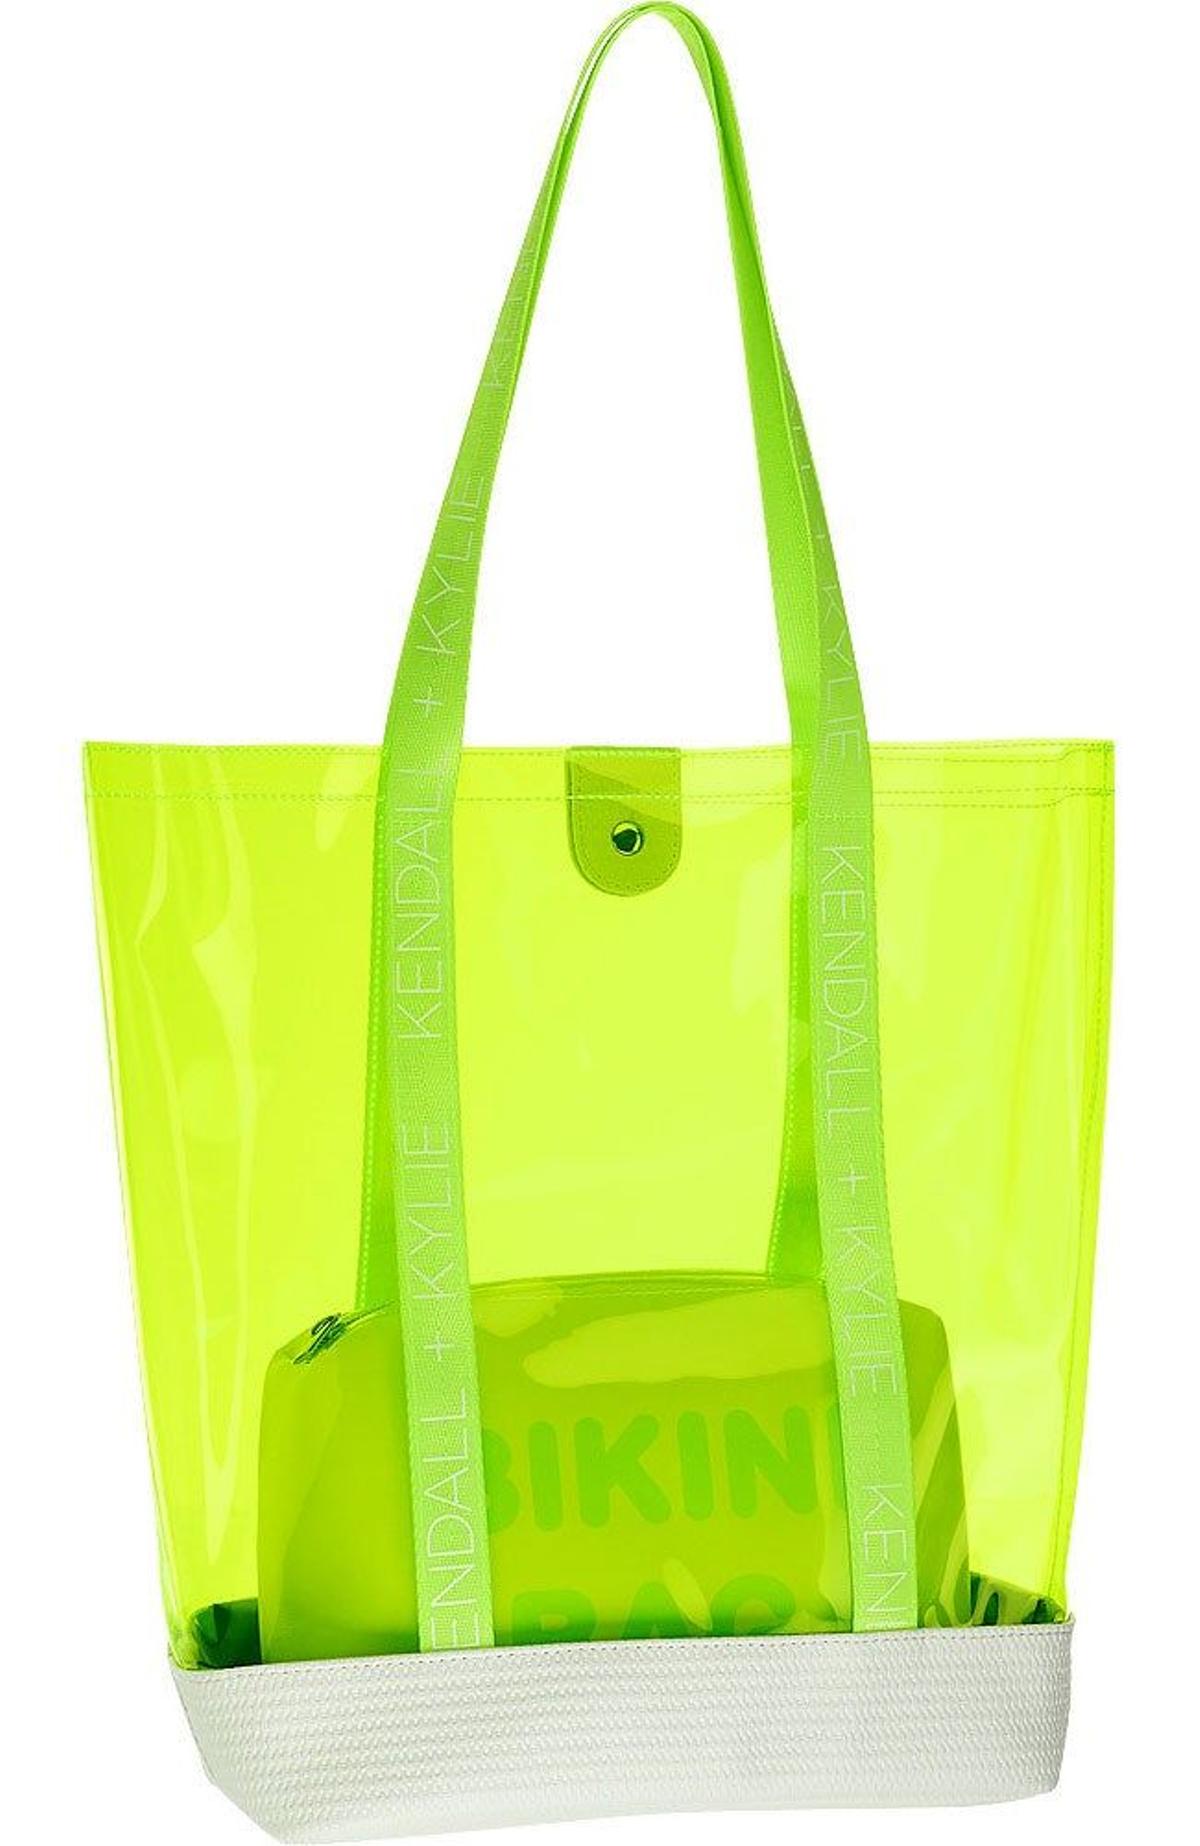 Bolso flúor transparente de la colección Kendall+Kylie para Deichmann primavera-verano 2020. (Precio: 29,99 euros)